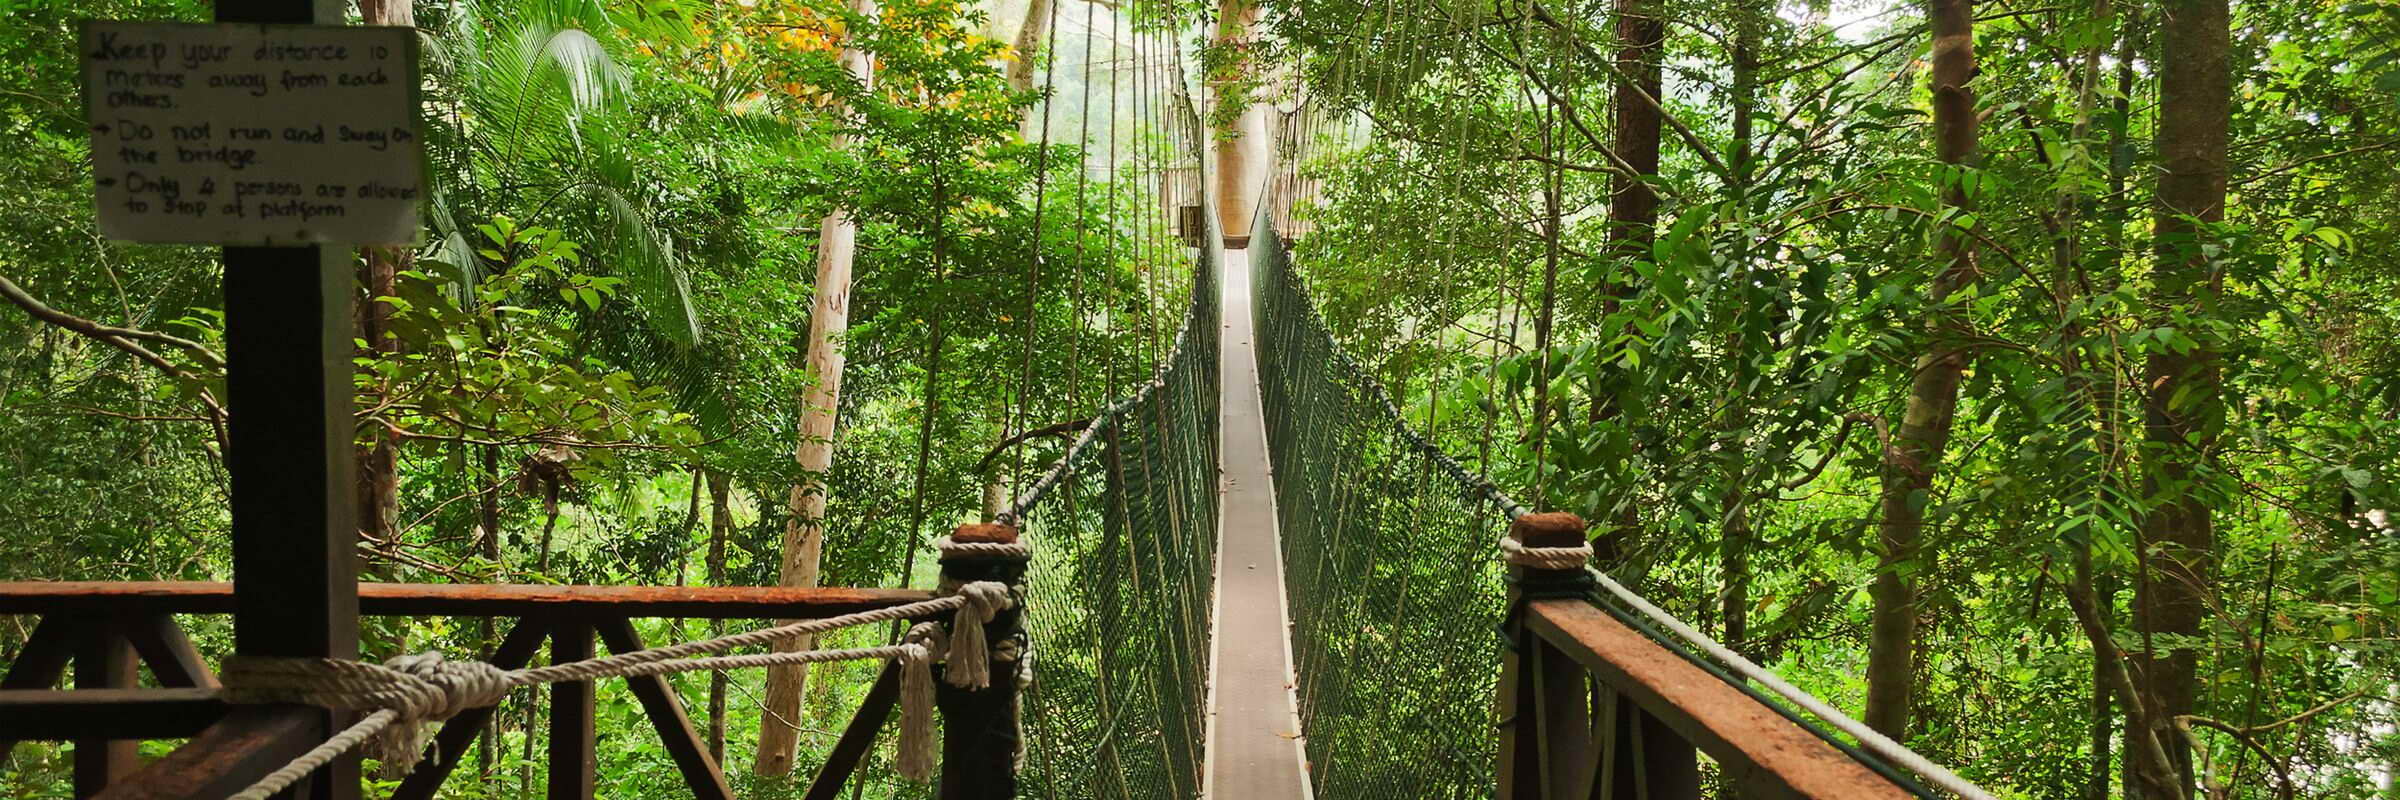 Der Canopy Walk ist ein System aus Hängebrücken, das es erlaubt, den Taman-Negara-Nationalpark auf luftiger Höhe zu durchwandern.